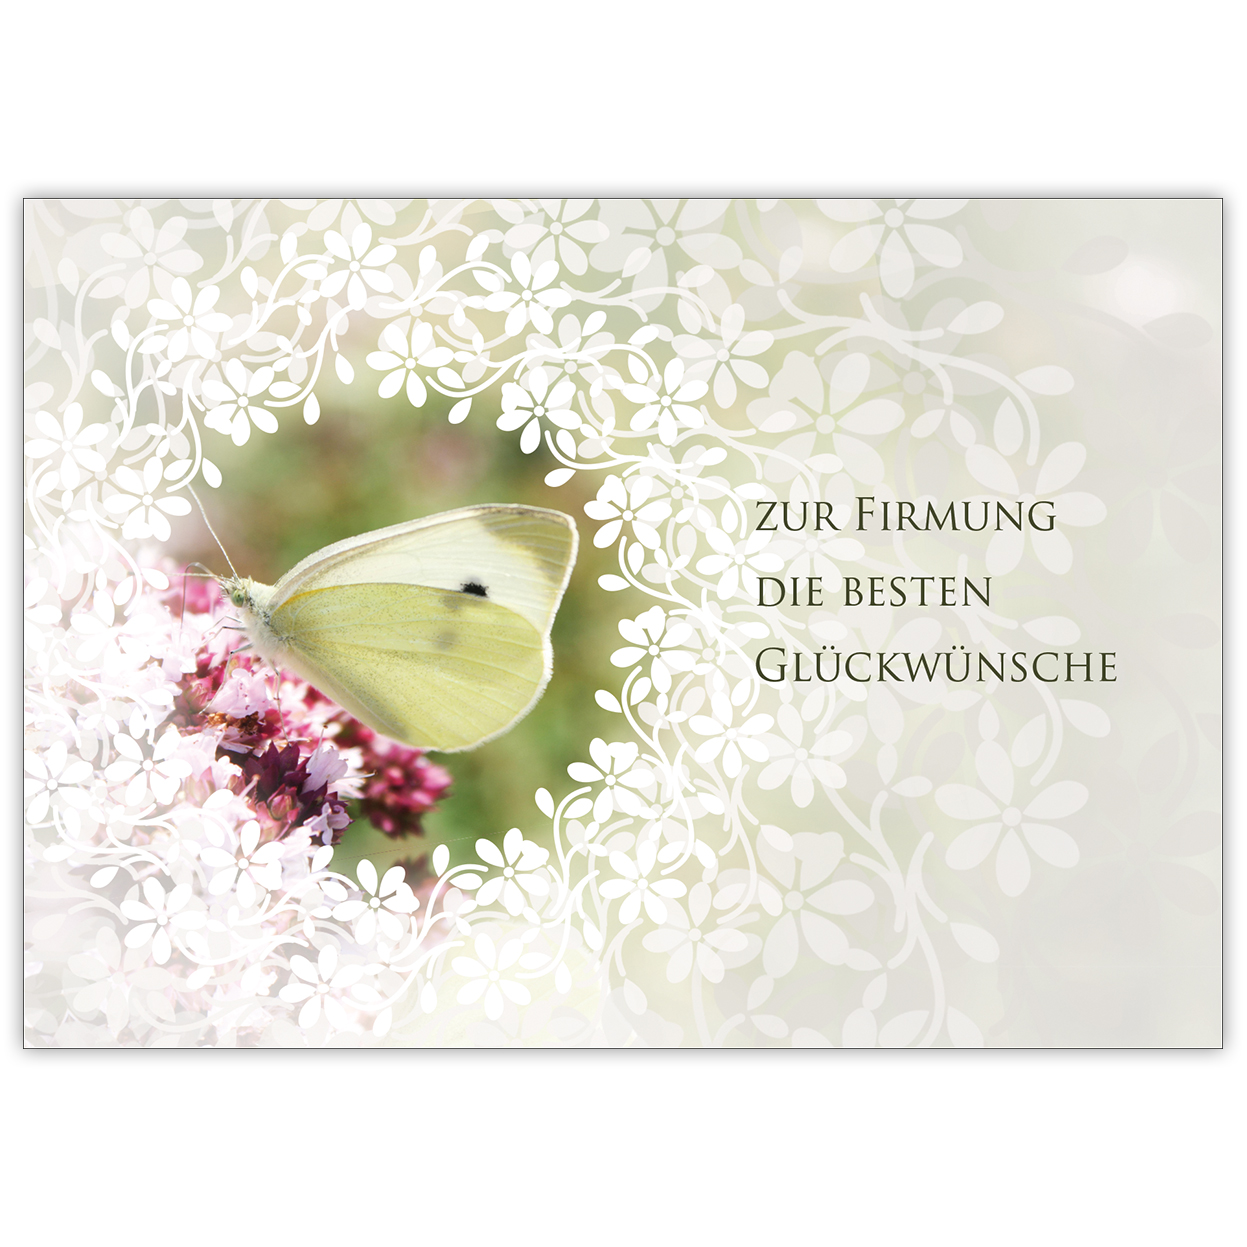 Traumhafte Glückwunsch Karte mit Schmetterling und Blüten "Zur Firmung die besten Glückwünsche"